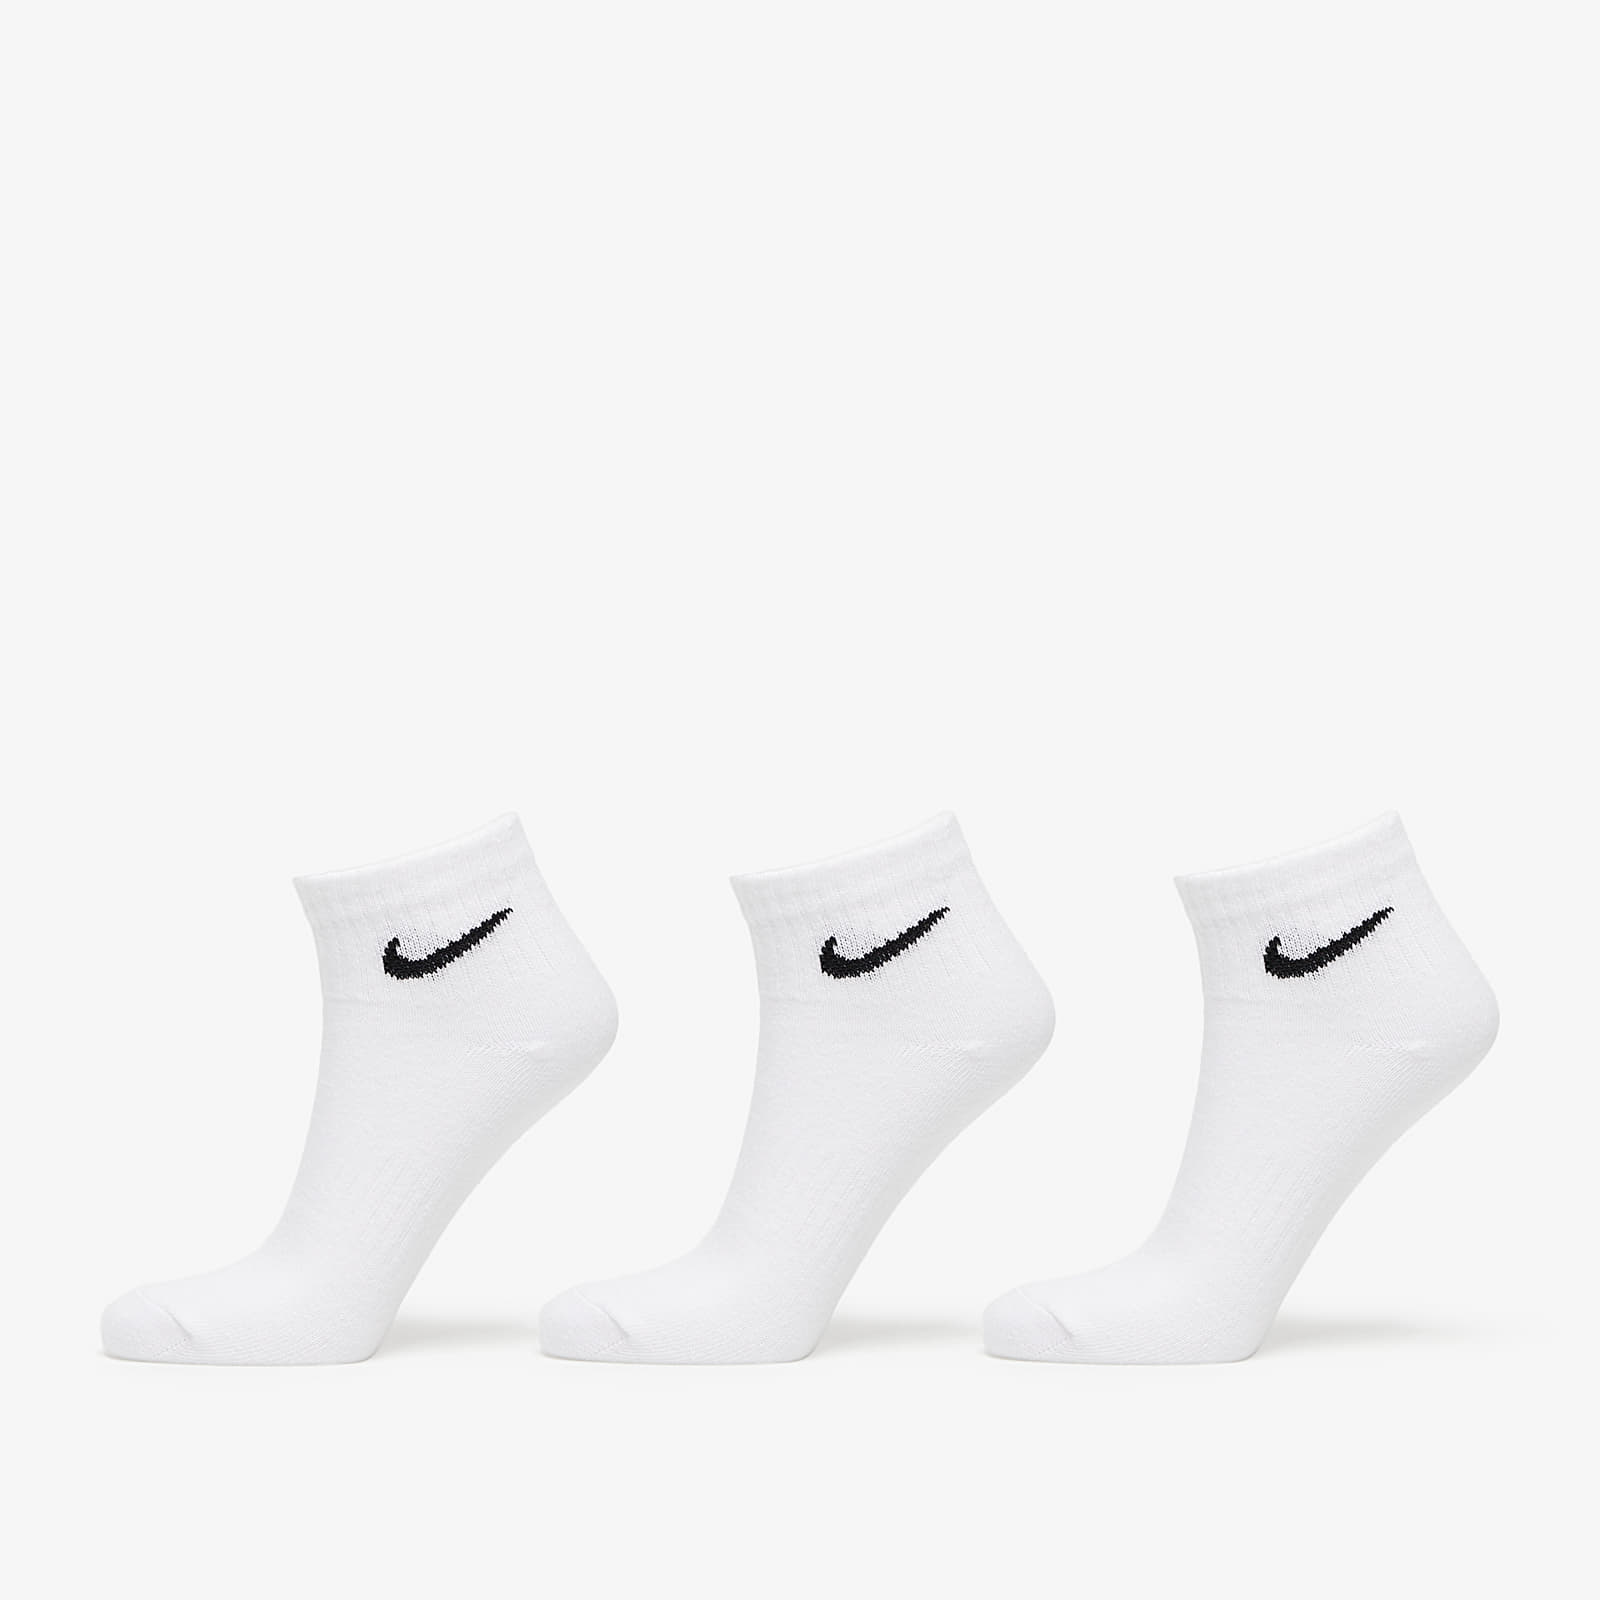 Socks Nike Everyday Lightweight Ankle Socks 3-Pack White